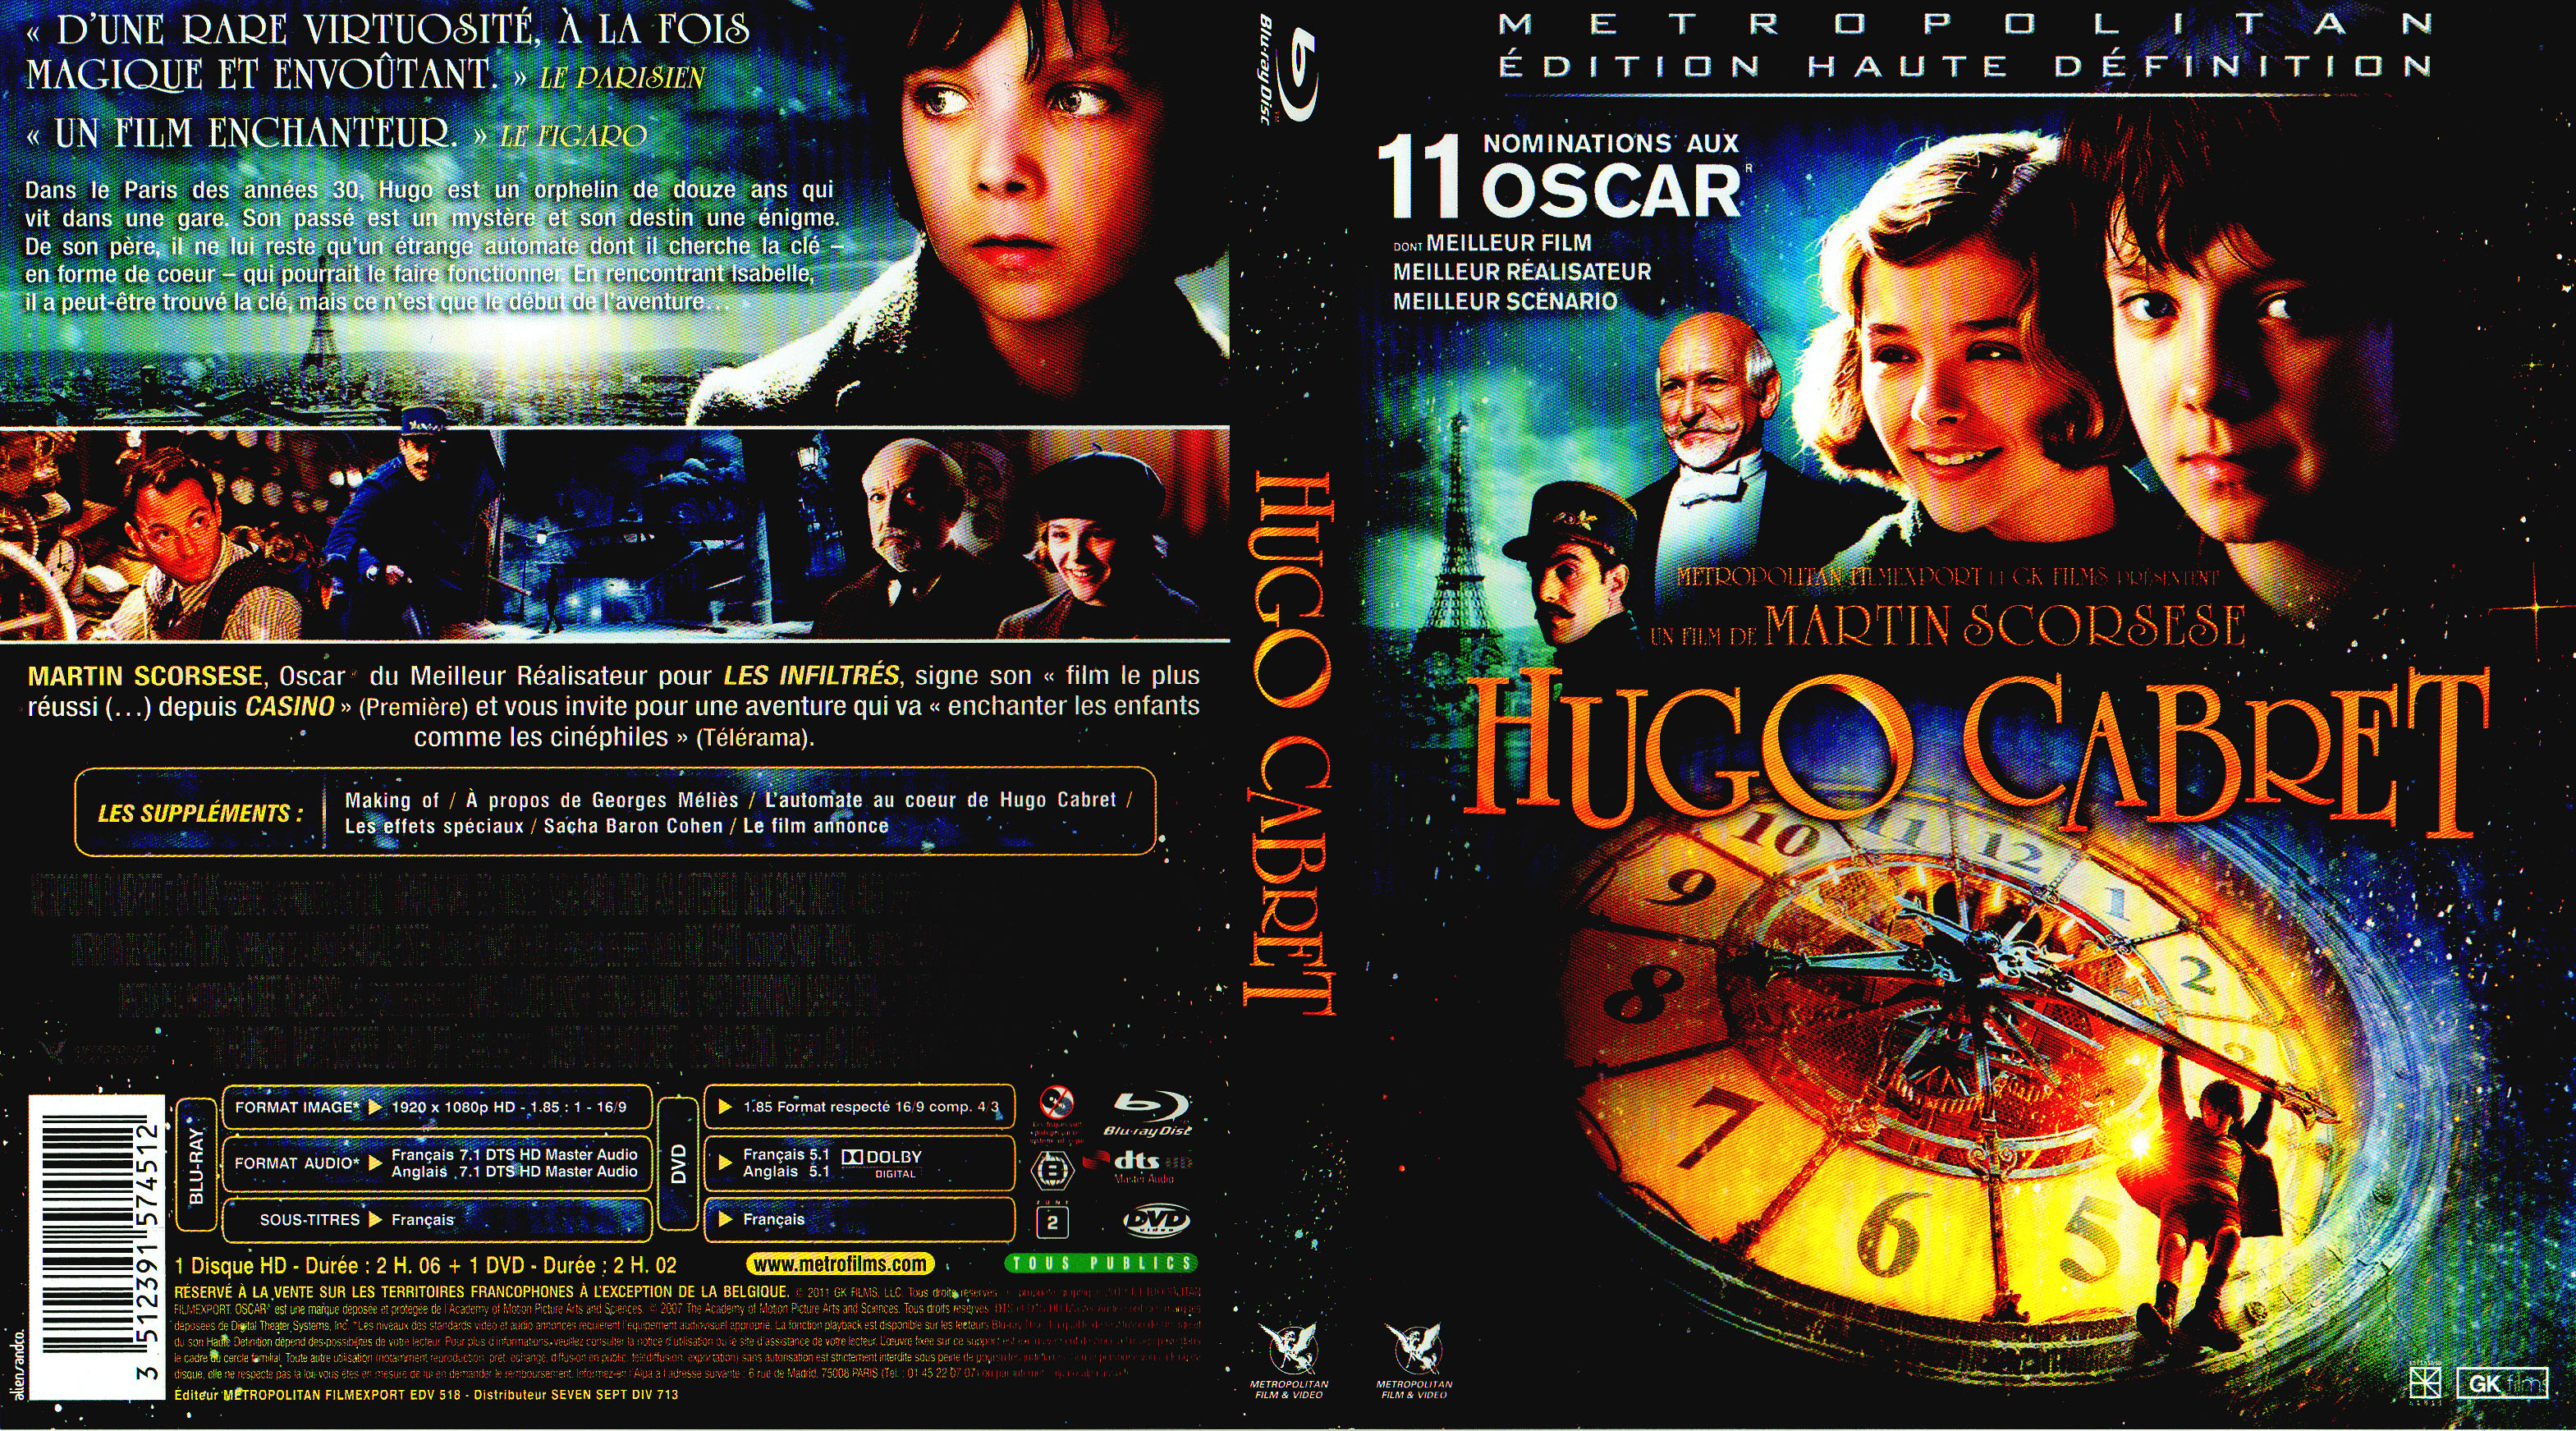 Jaquette DVD Hugo Cabret (BLU-RAY) v2